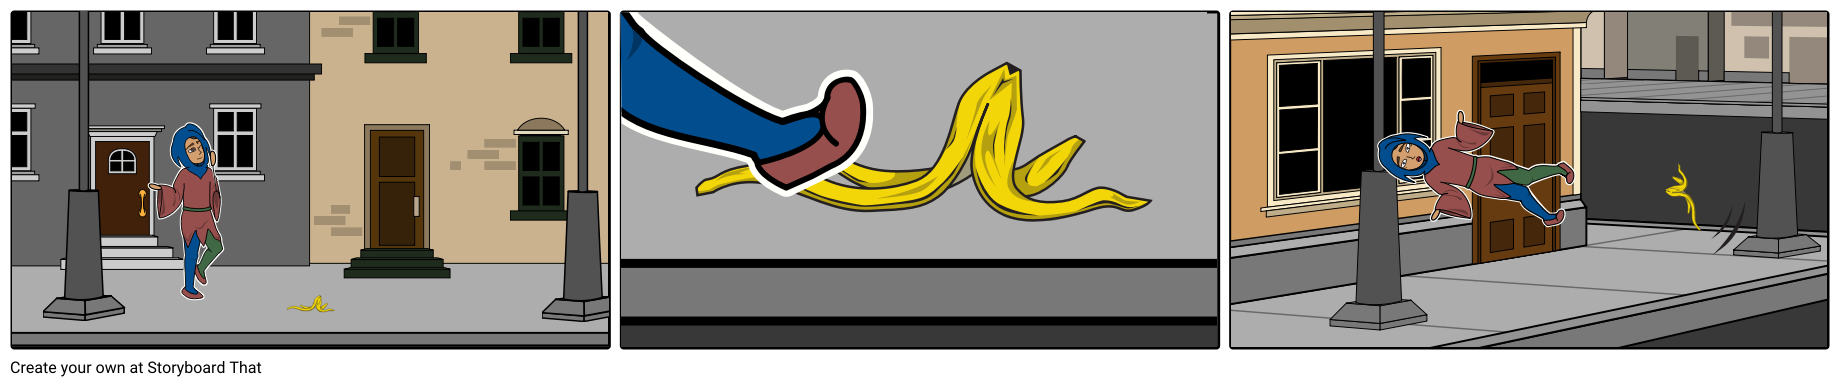 Jester slips on banana peel